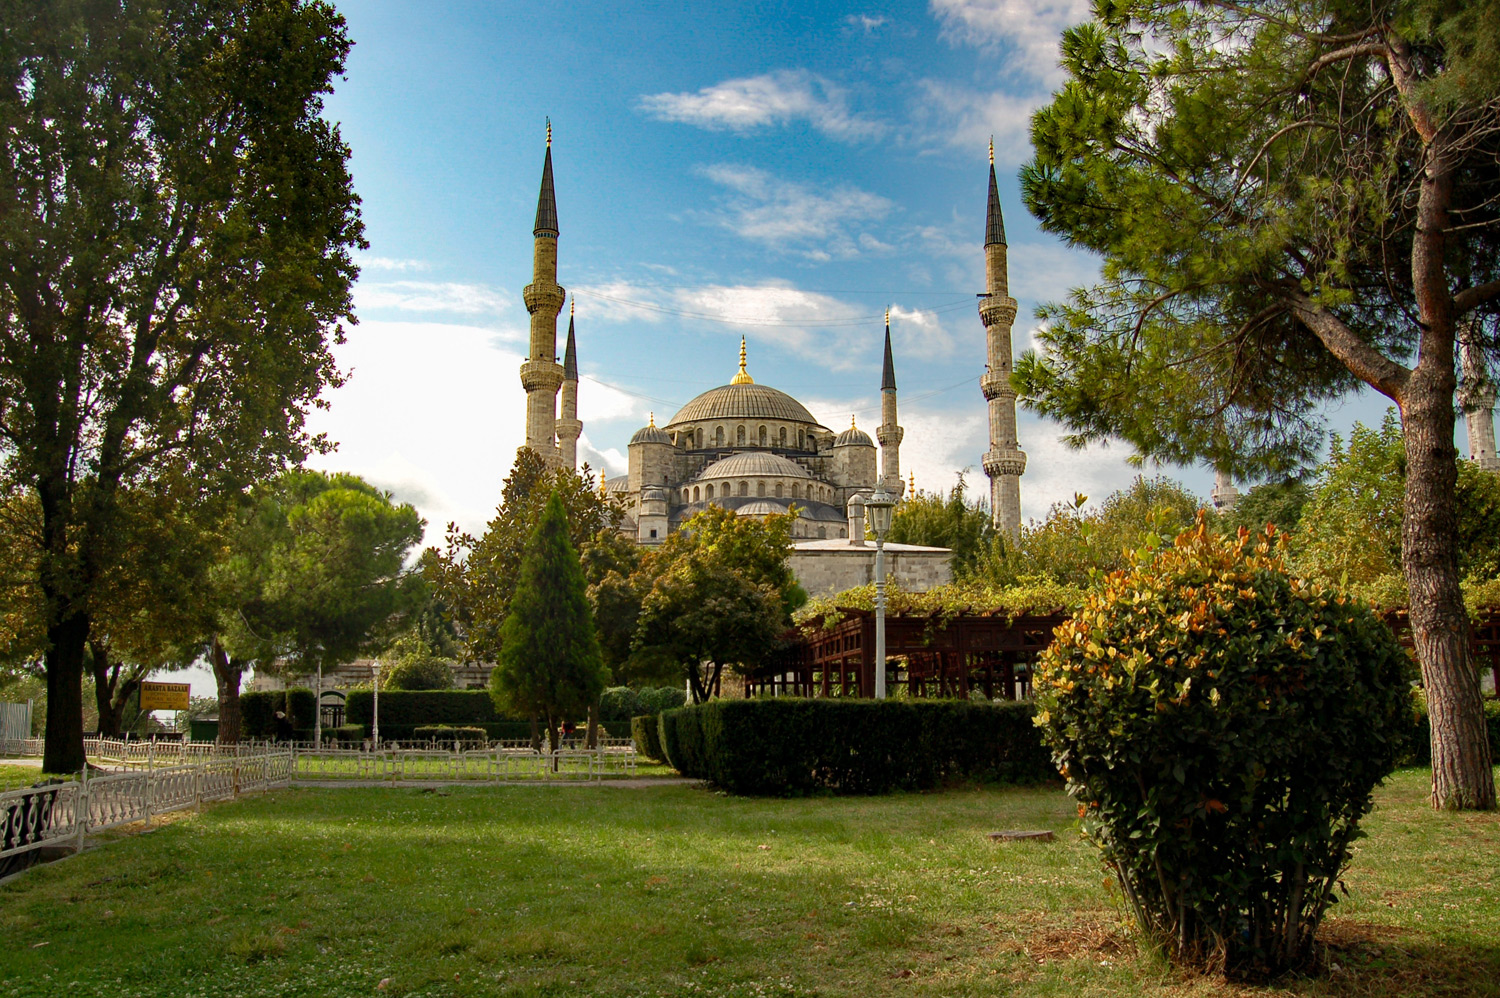 Sultanahmet (Blue) Mosque Square